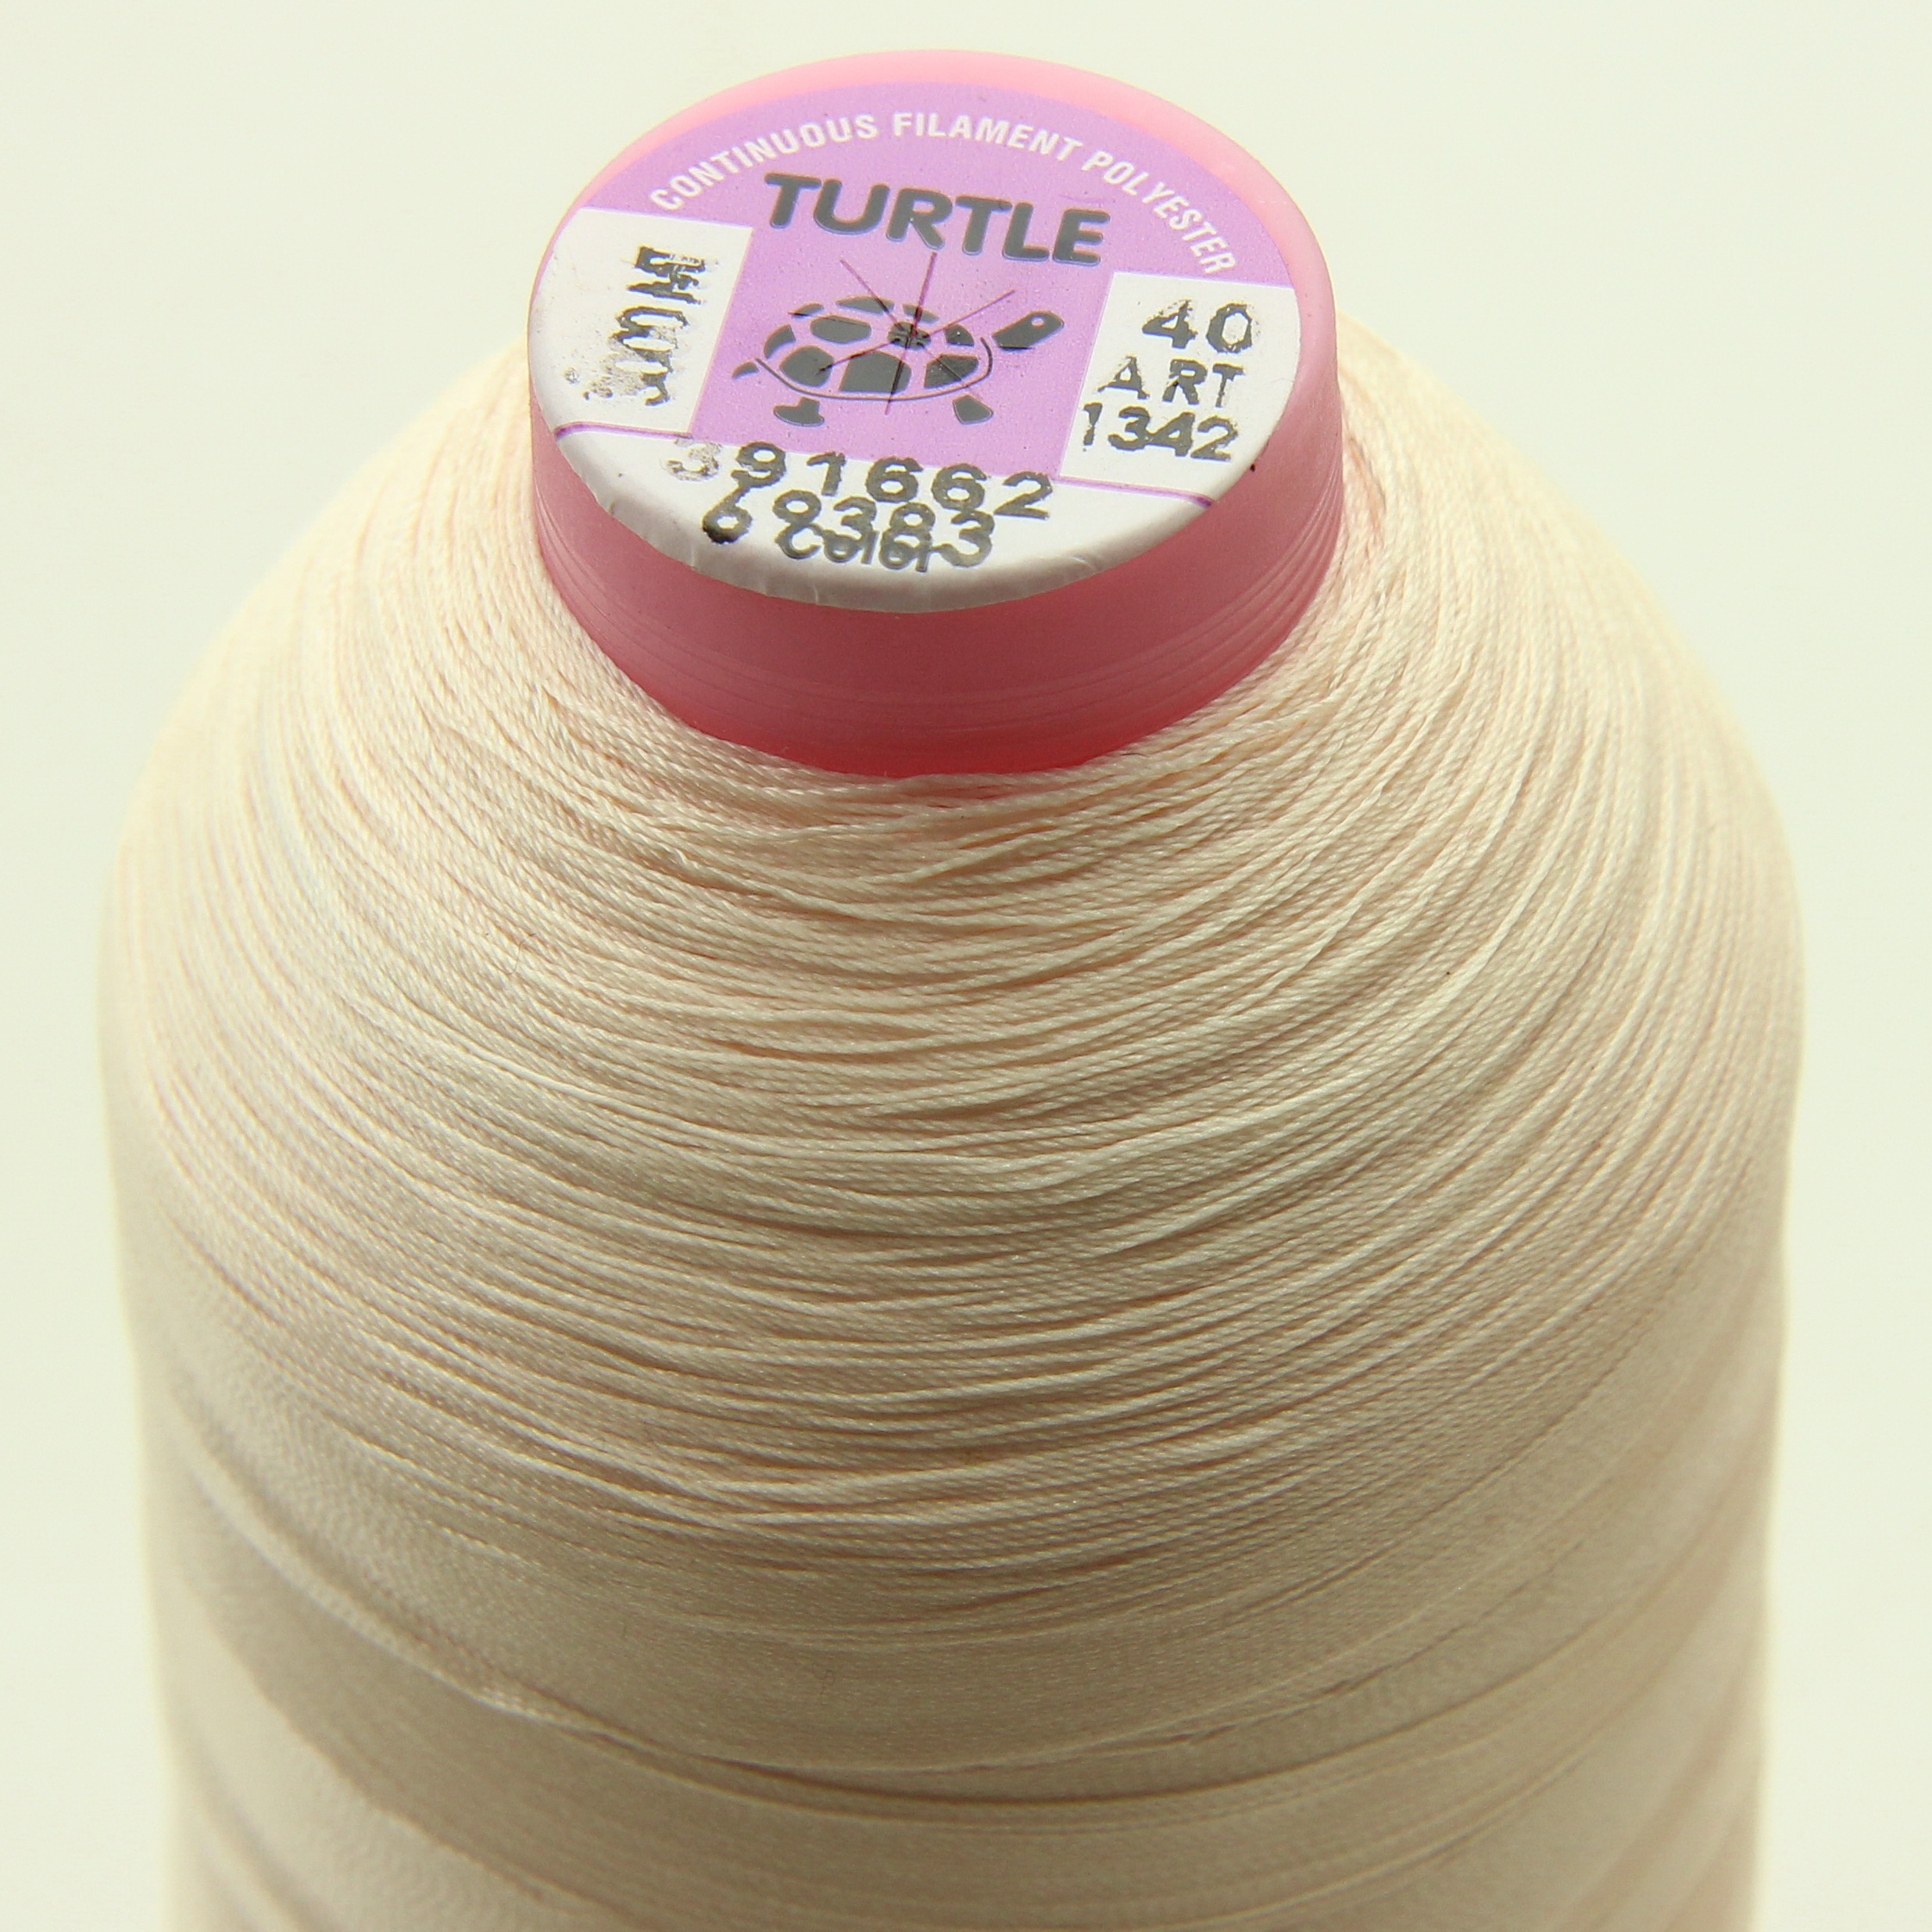 Нить TURTLE (Турция) №40 цвет 69383 кремовый для оверлока, длина 3000м. детальная фотка